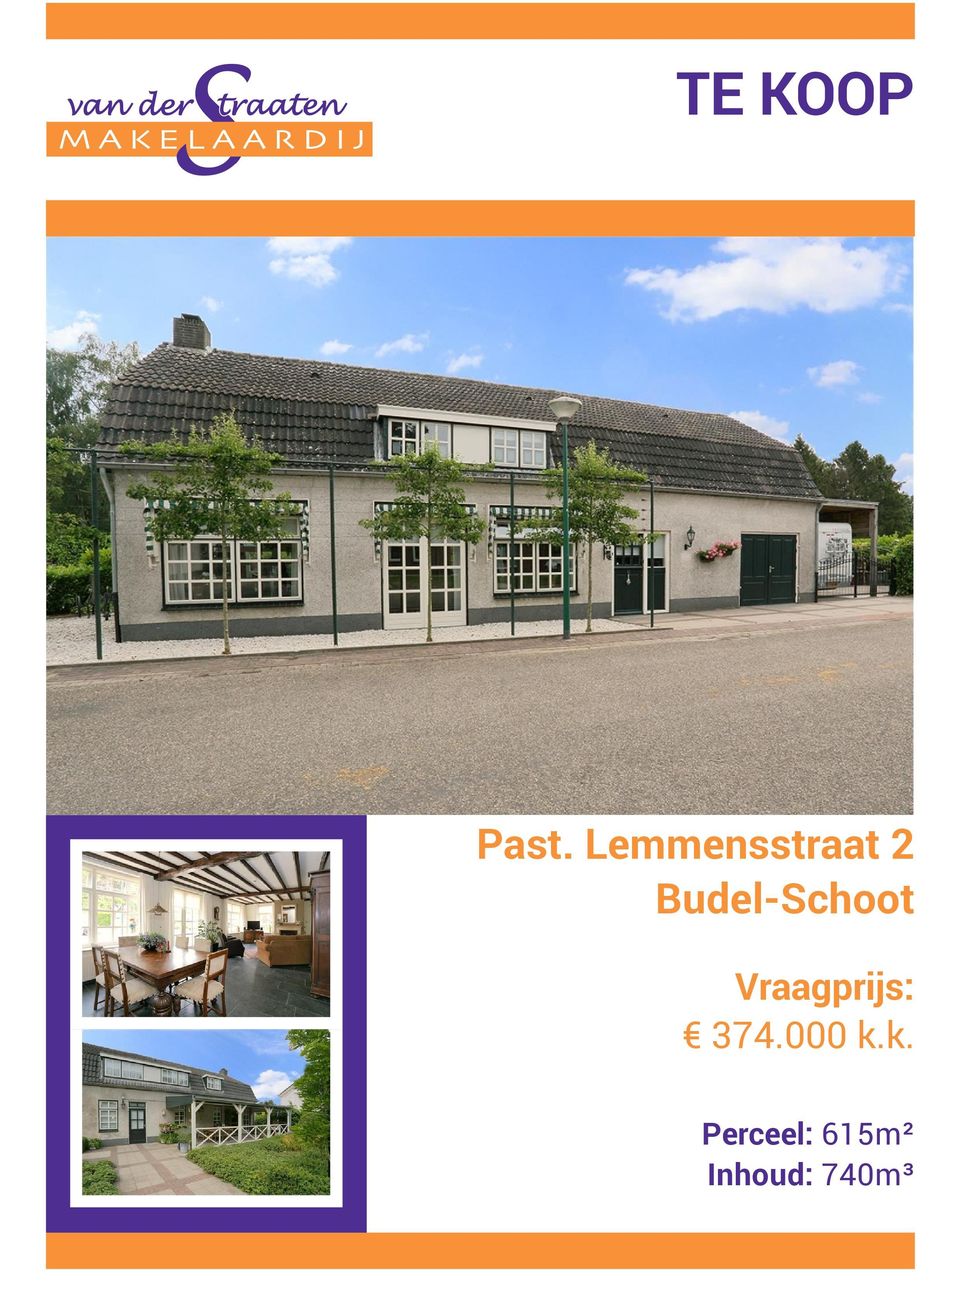 Budel-Schoot